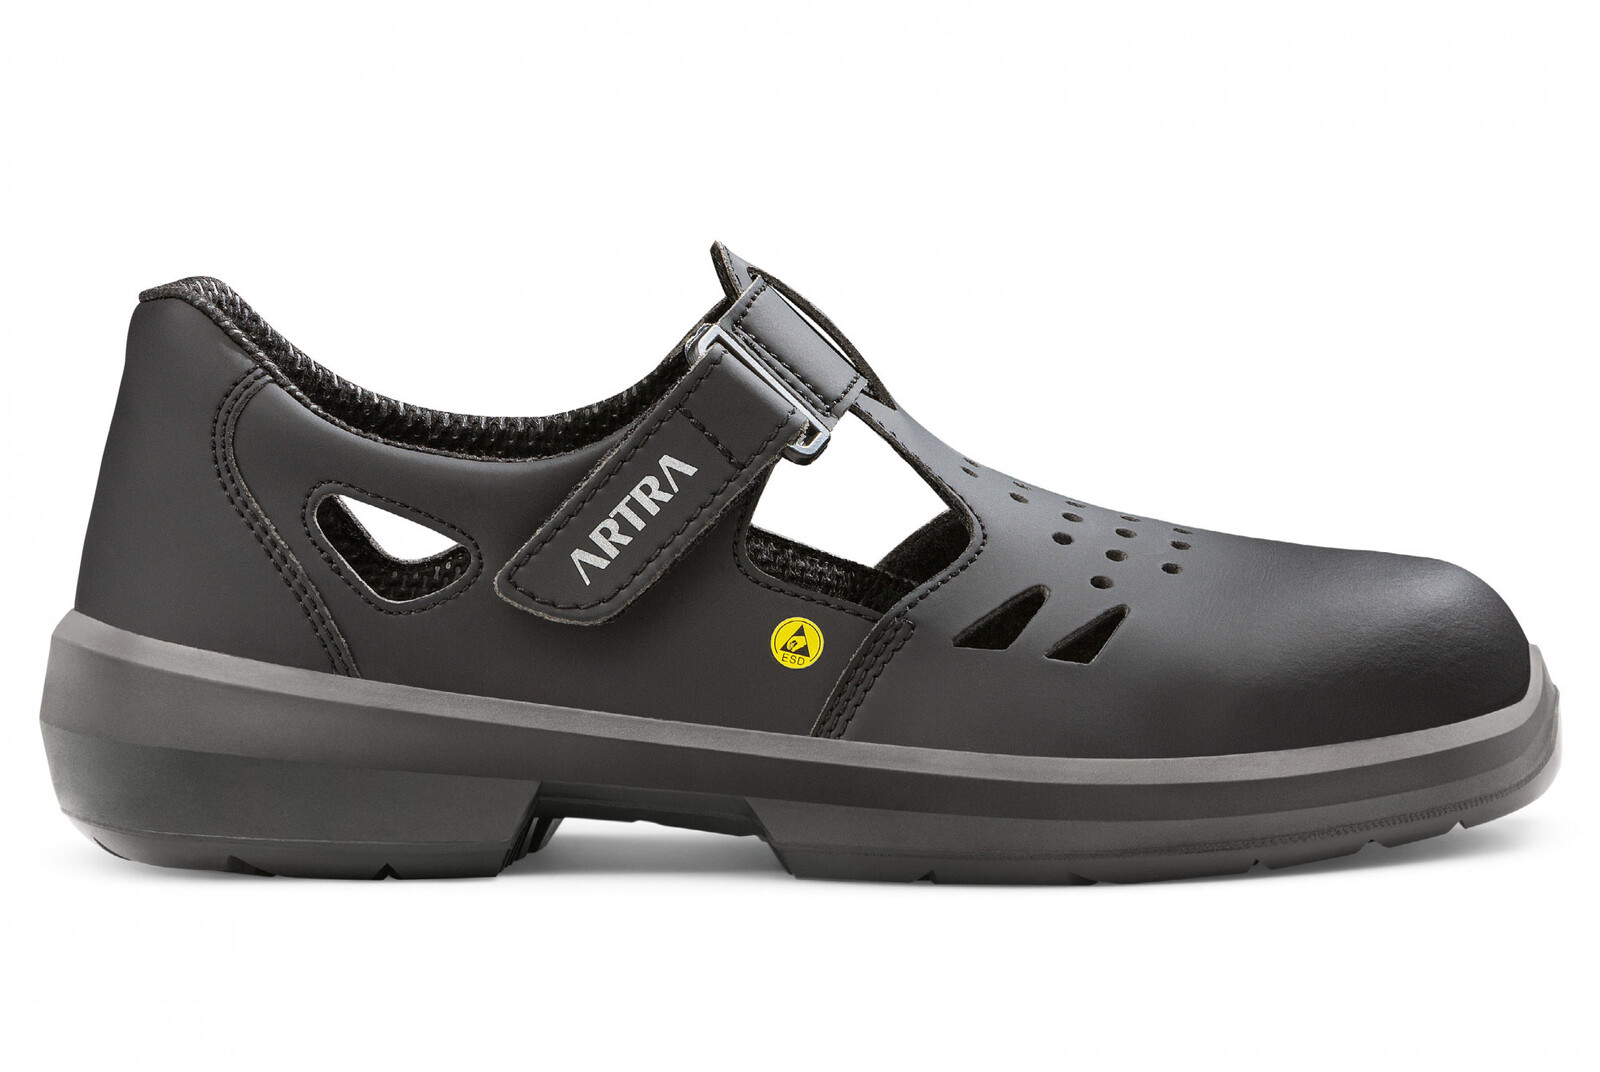 Bezpečnostné sandále Artra Armen 9008 6760 S1P SRC ESD MF - veľkosť: 37, farba: čierna